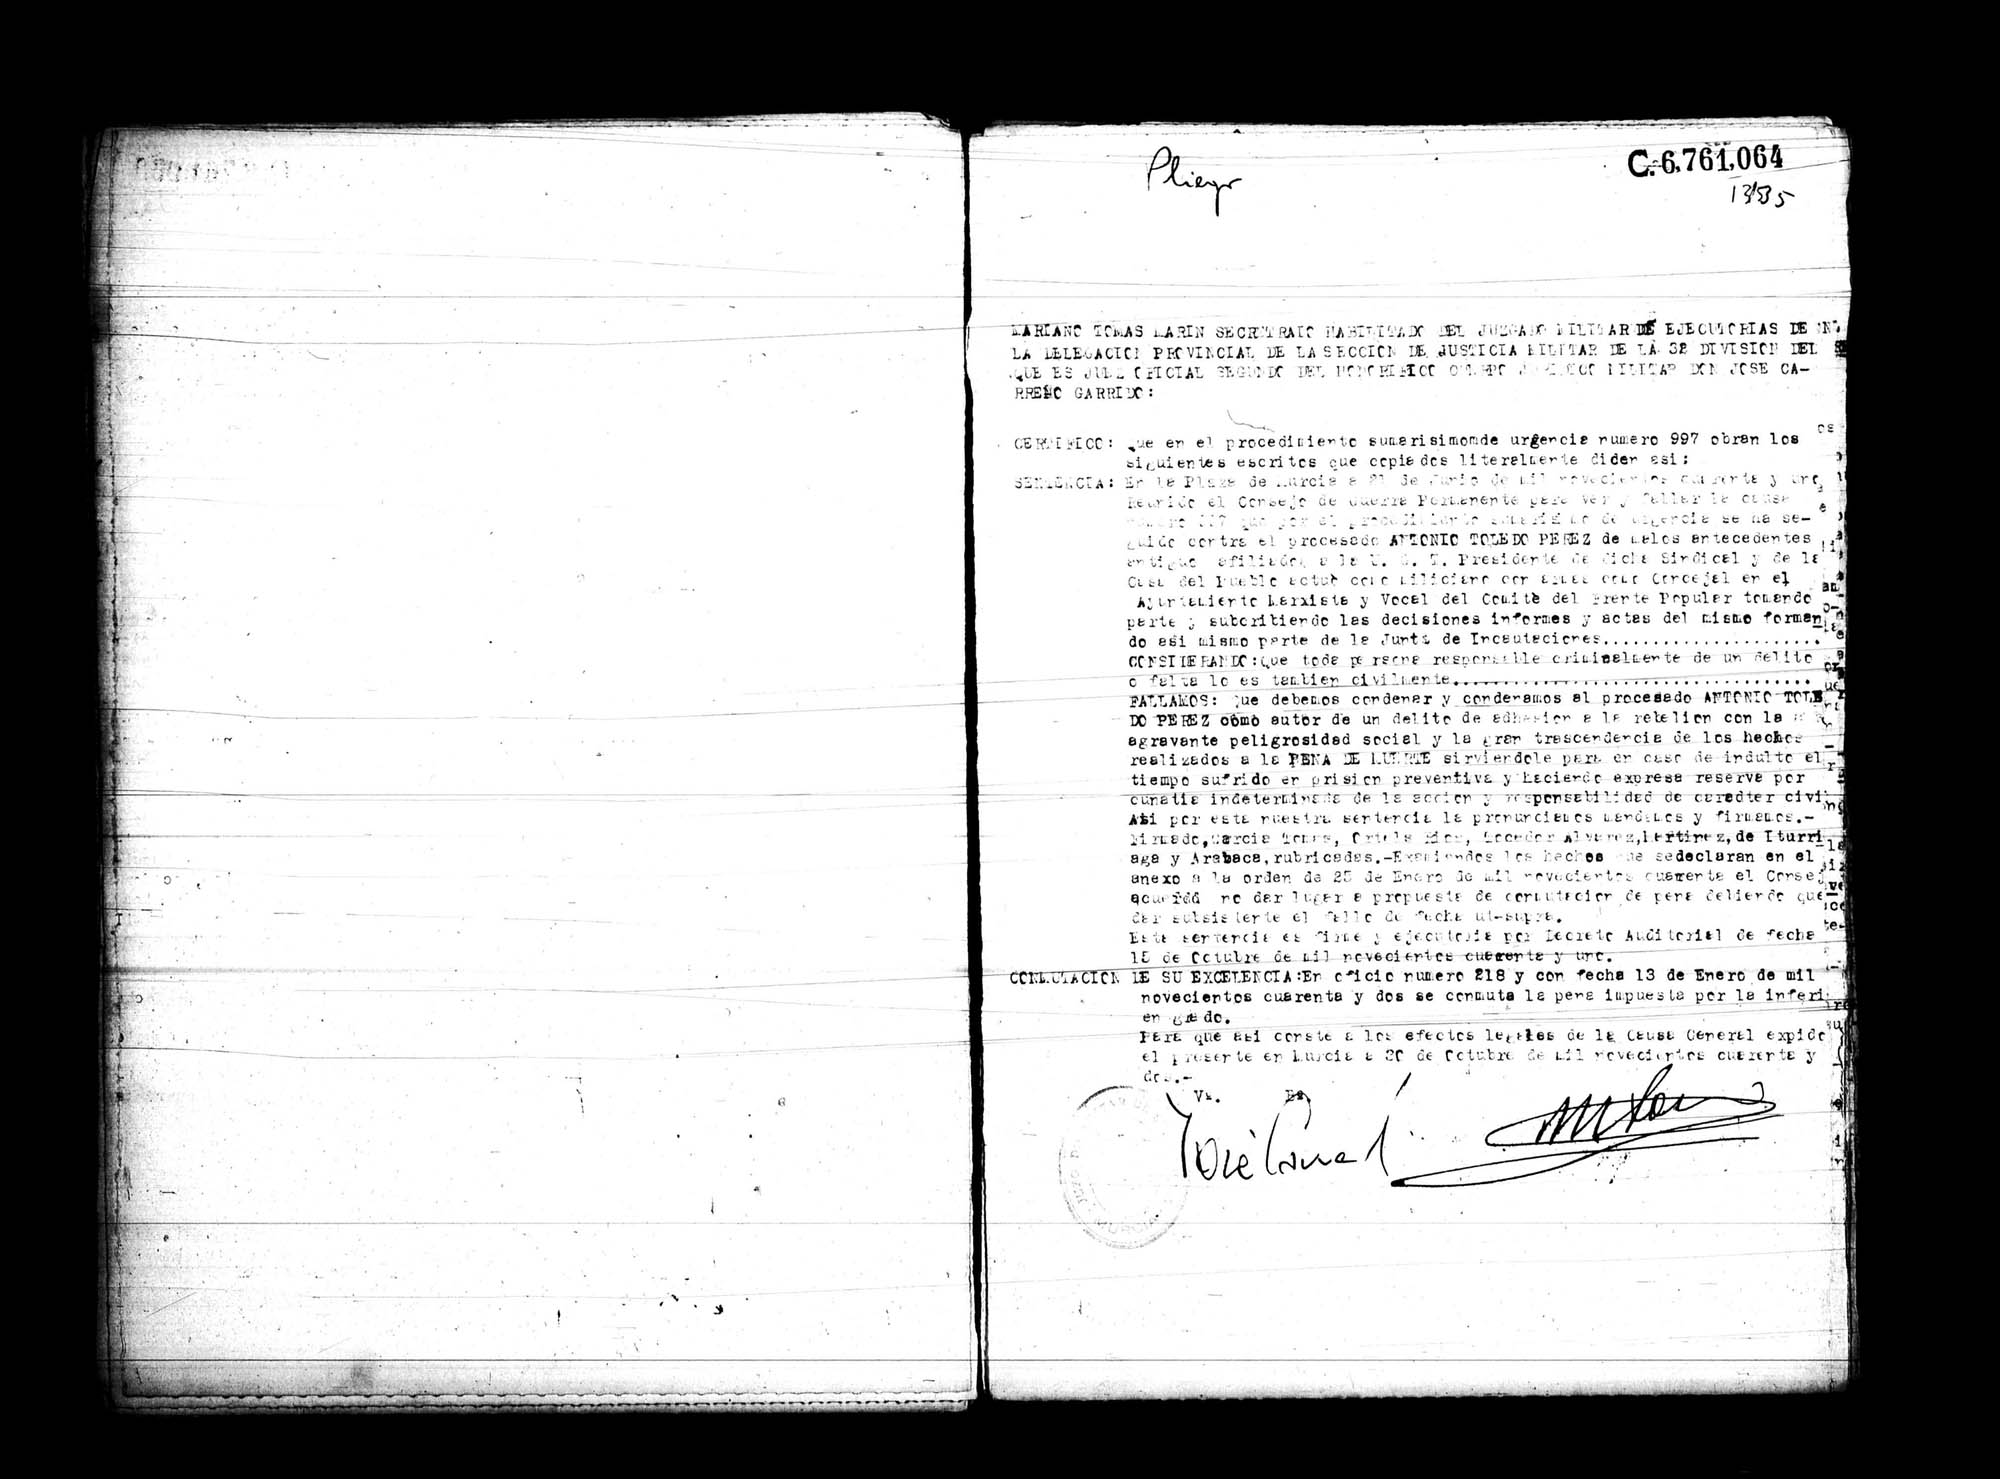 Certificado de la sentencia pronunciada contra Antonio Toledo Pérez, causa 997, el 21 de junio de 1941 en Murcia.